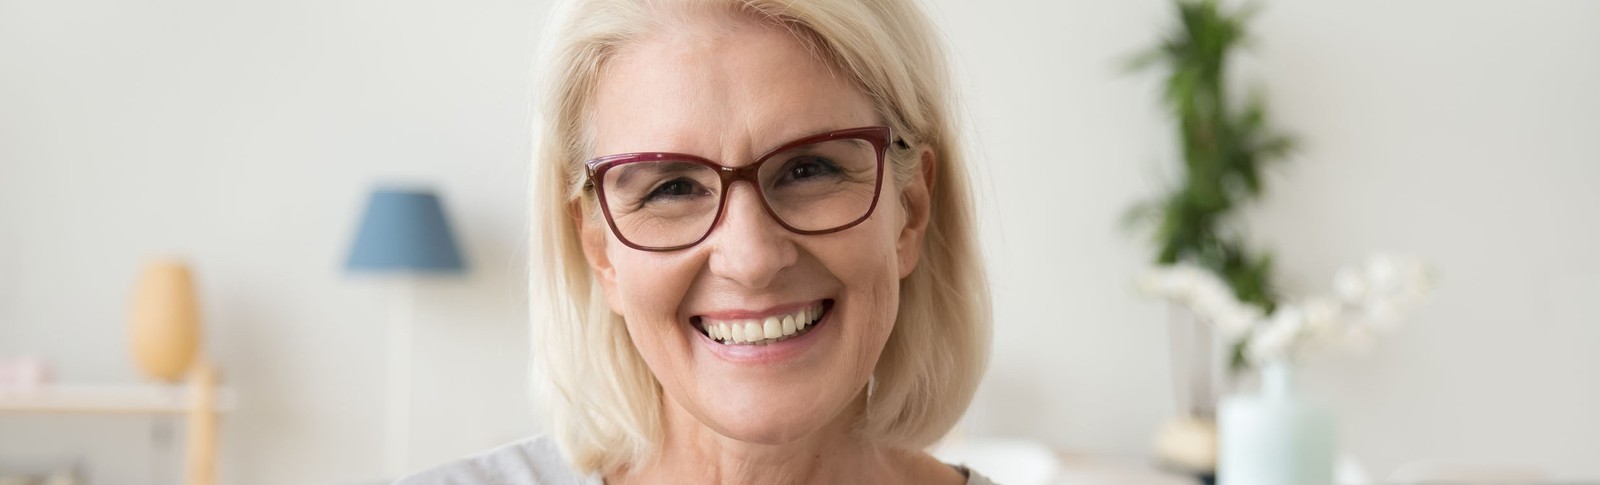 Blonde Frau mit Brille kann nach Unterspritzung der Nasolabialfalte wieder freudig lächeln